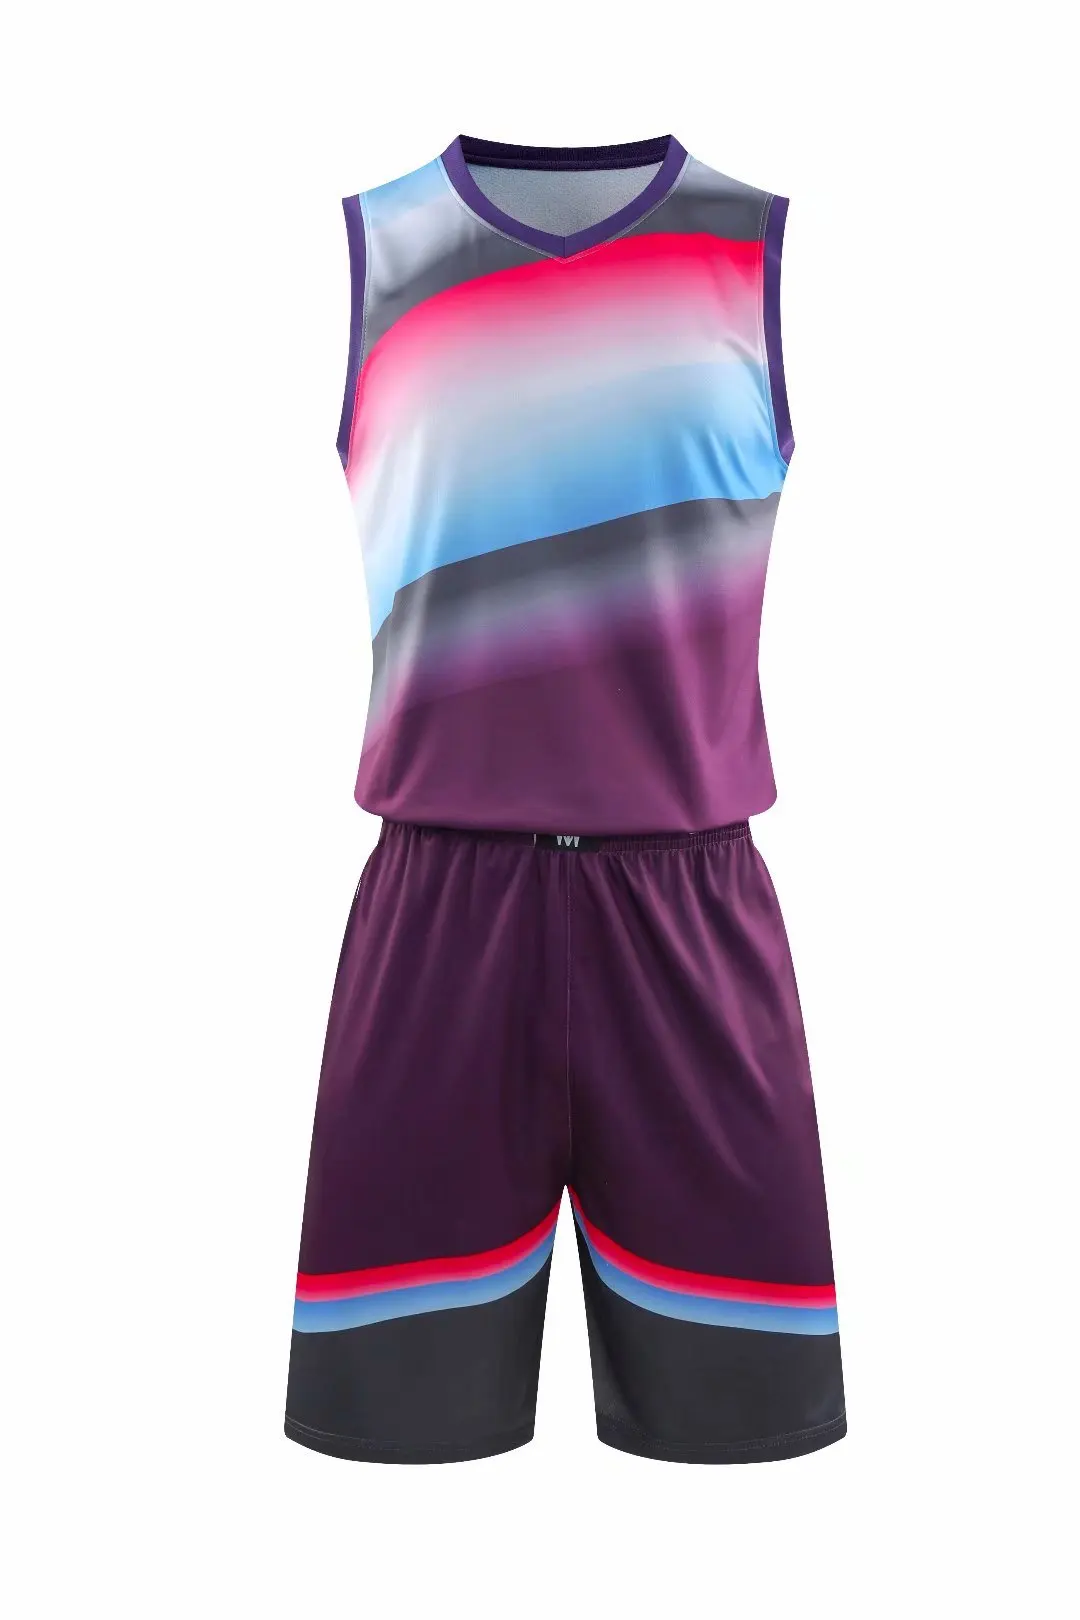 Многоцветная баскетбольная майка для колледжа, спортивный костюм, индивидуальная Молодежная баскетбольная форма для клуба,, командная рубашка без рукавов, новинка - Цвет: Фиолетовый